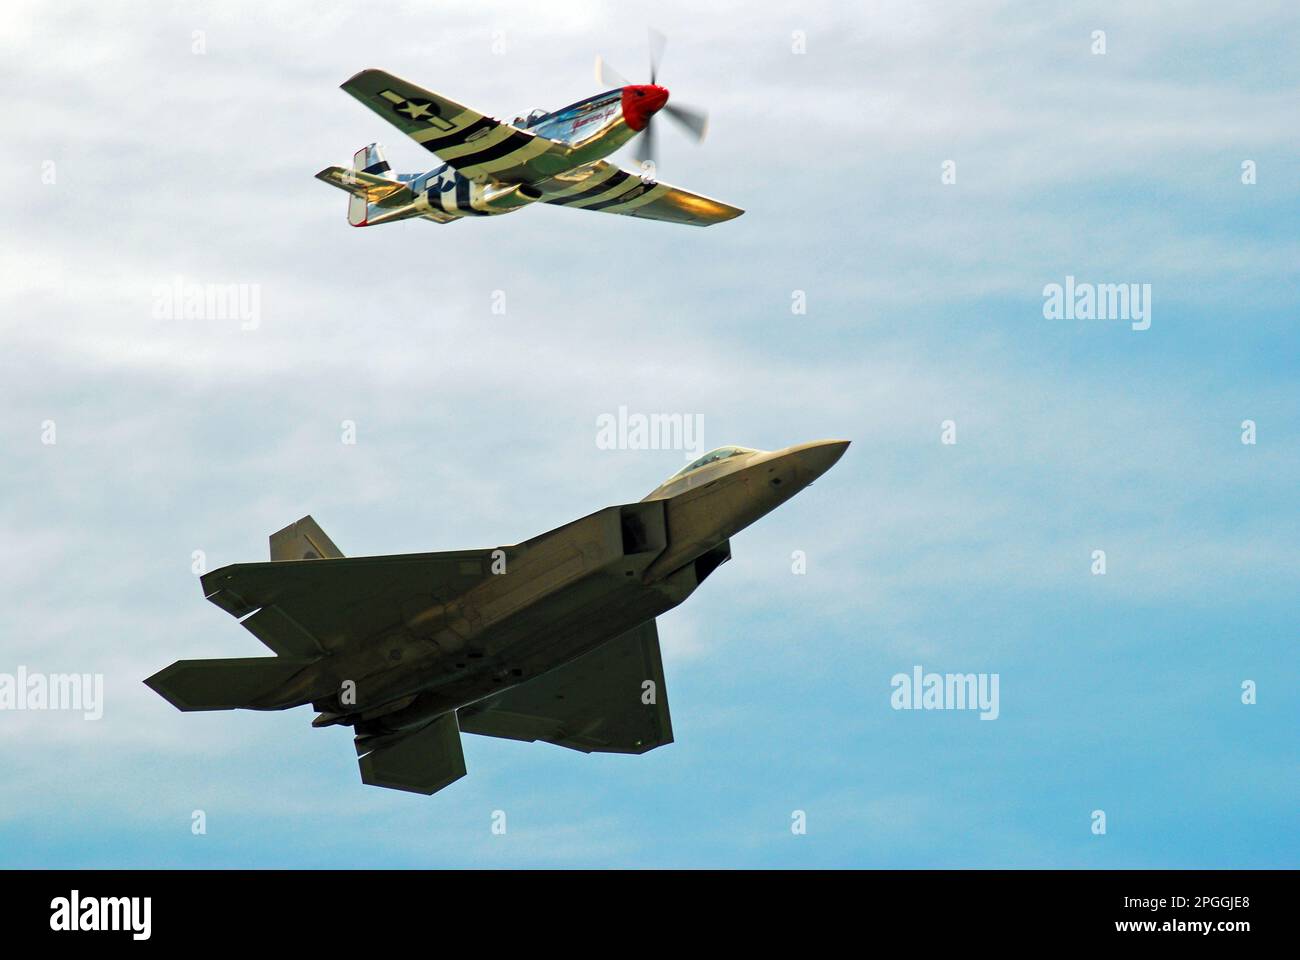 Un avion moderne de F22 Raptor et un avion Mustang de la Seconde Guerre mondiale de P51 volent côte à côte dans le ciel, représentant deux époques de vol et d'aviation militaire Banque D'Images